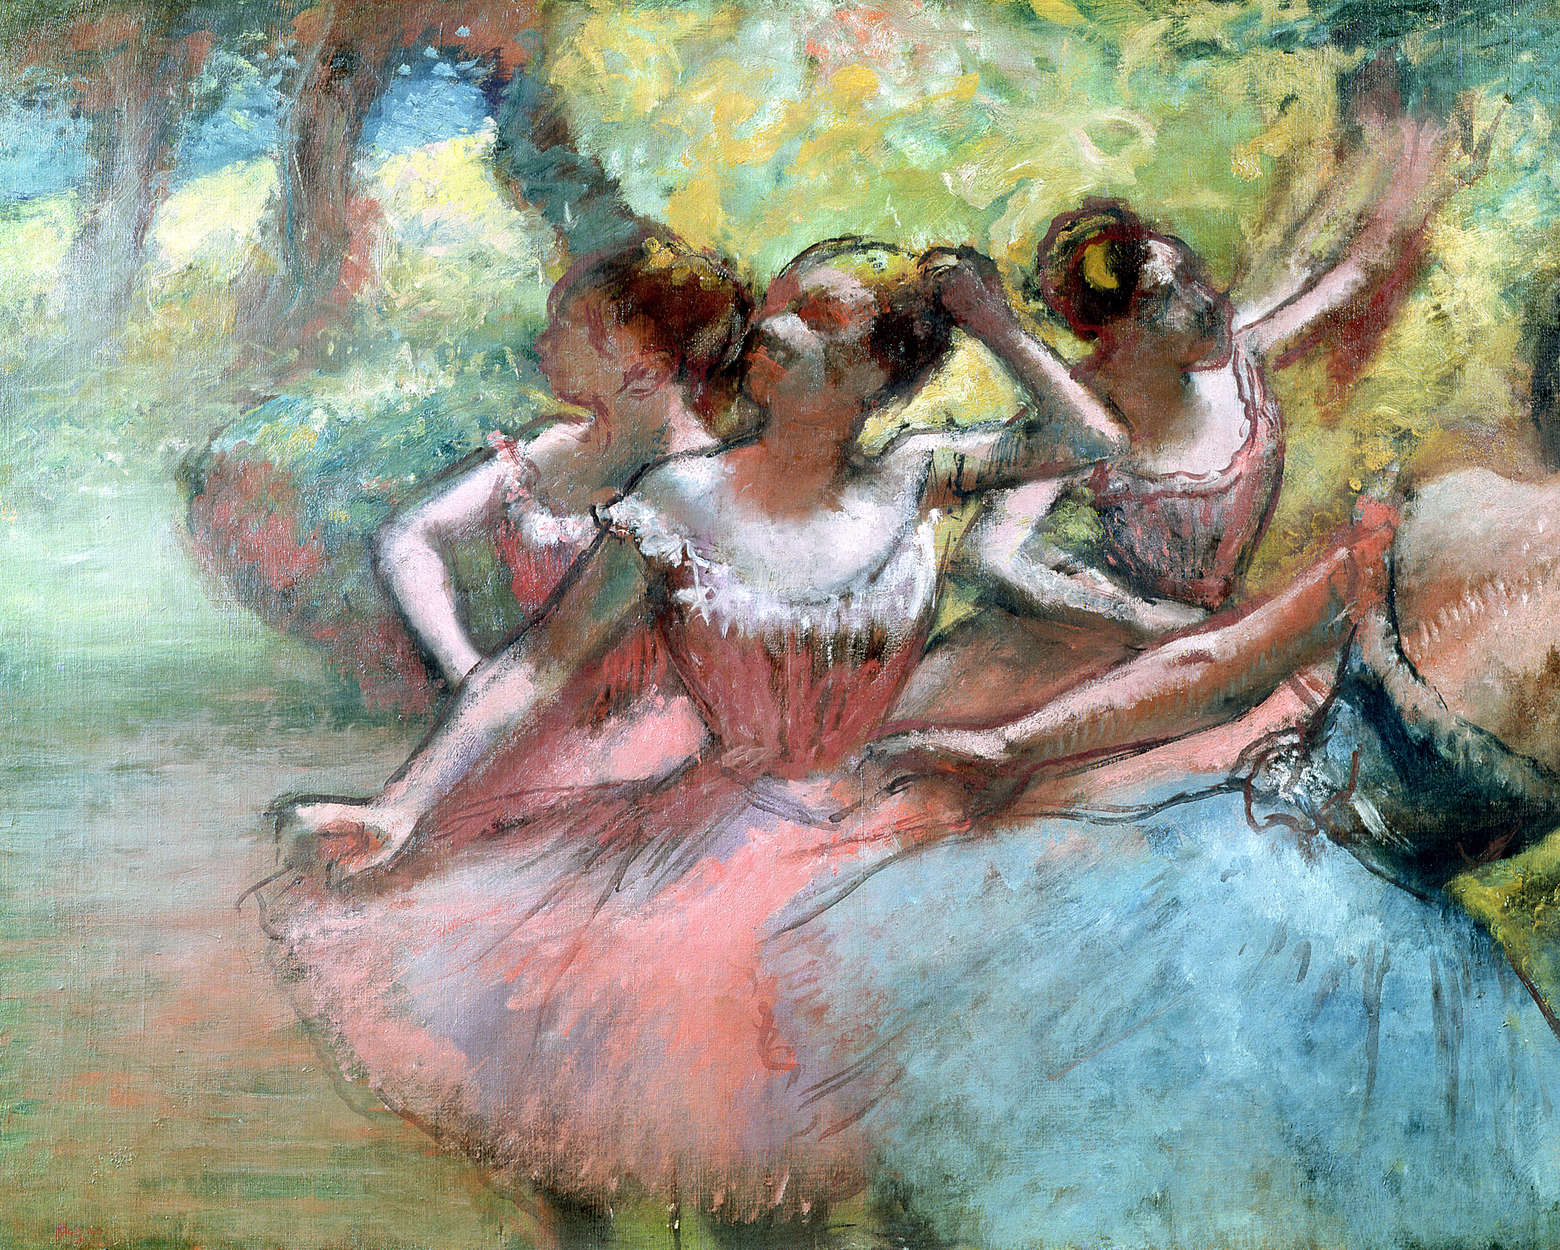             Papier peint "Quatre ballerines sur scène" de Hilaire Degas
        